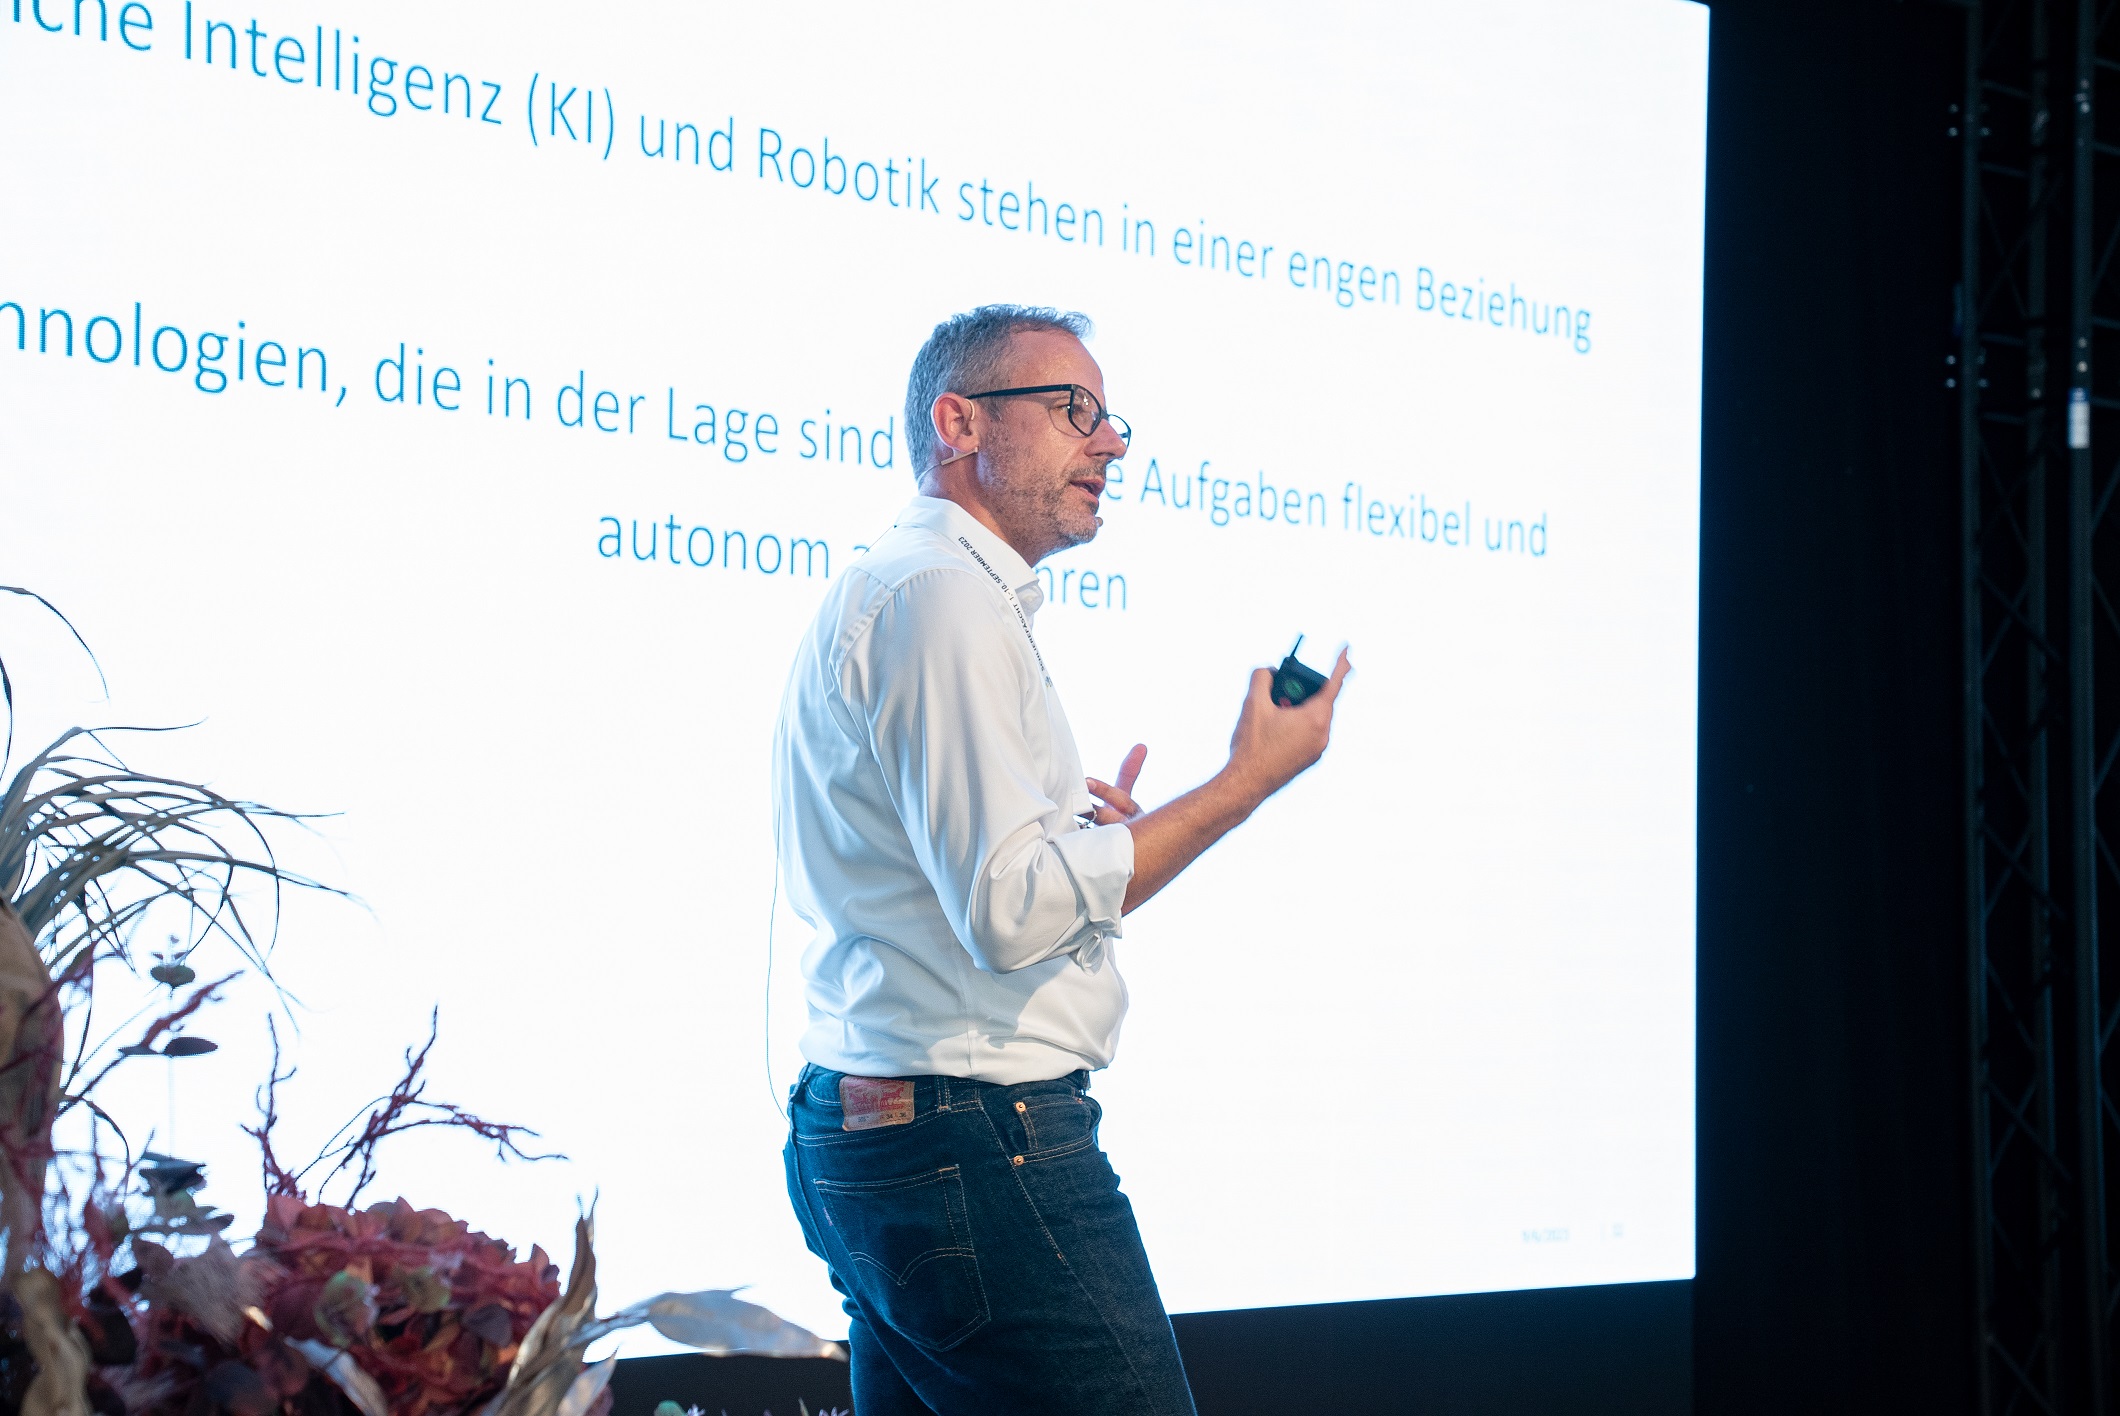 Patrick Griss, Zühlke Ventures, referiert über die Schweiz im globalen KI- und Robotik-Wettbewerb.